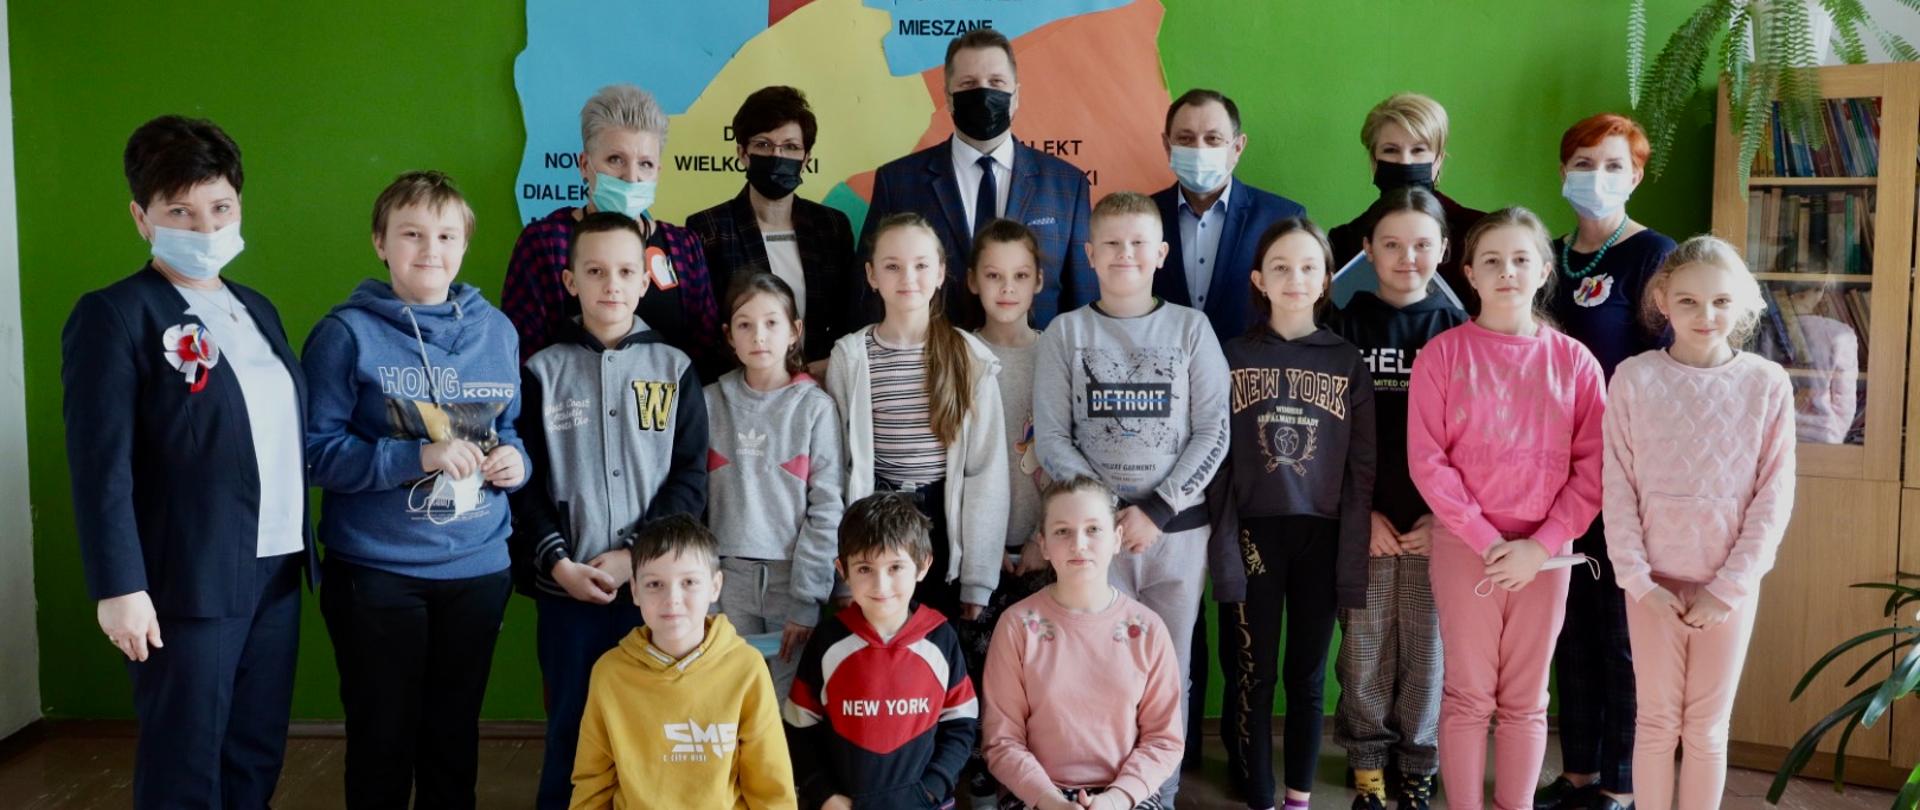 Minister Przemysław Czarnek pozuje do zdjęcia z uczniami i nauczycielami ze szkoły w Horodle. Za nimi wisi mapa Polski.